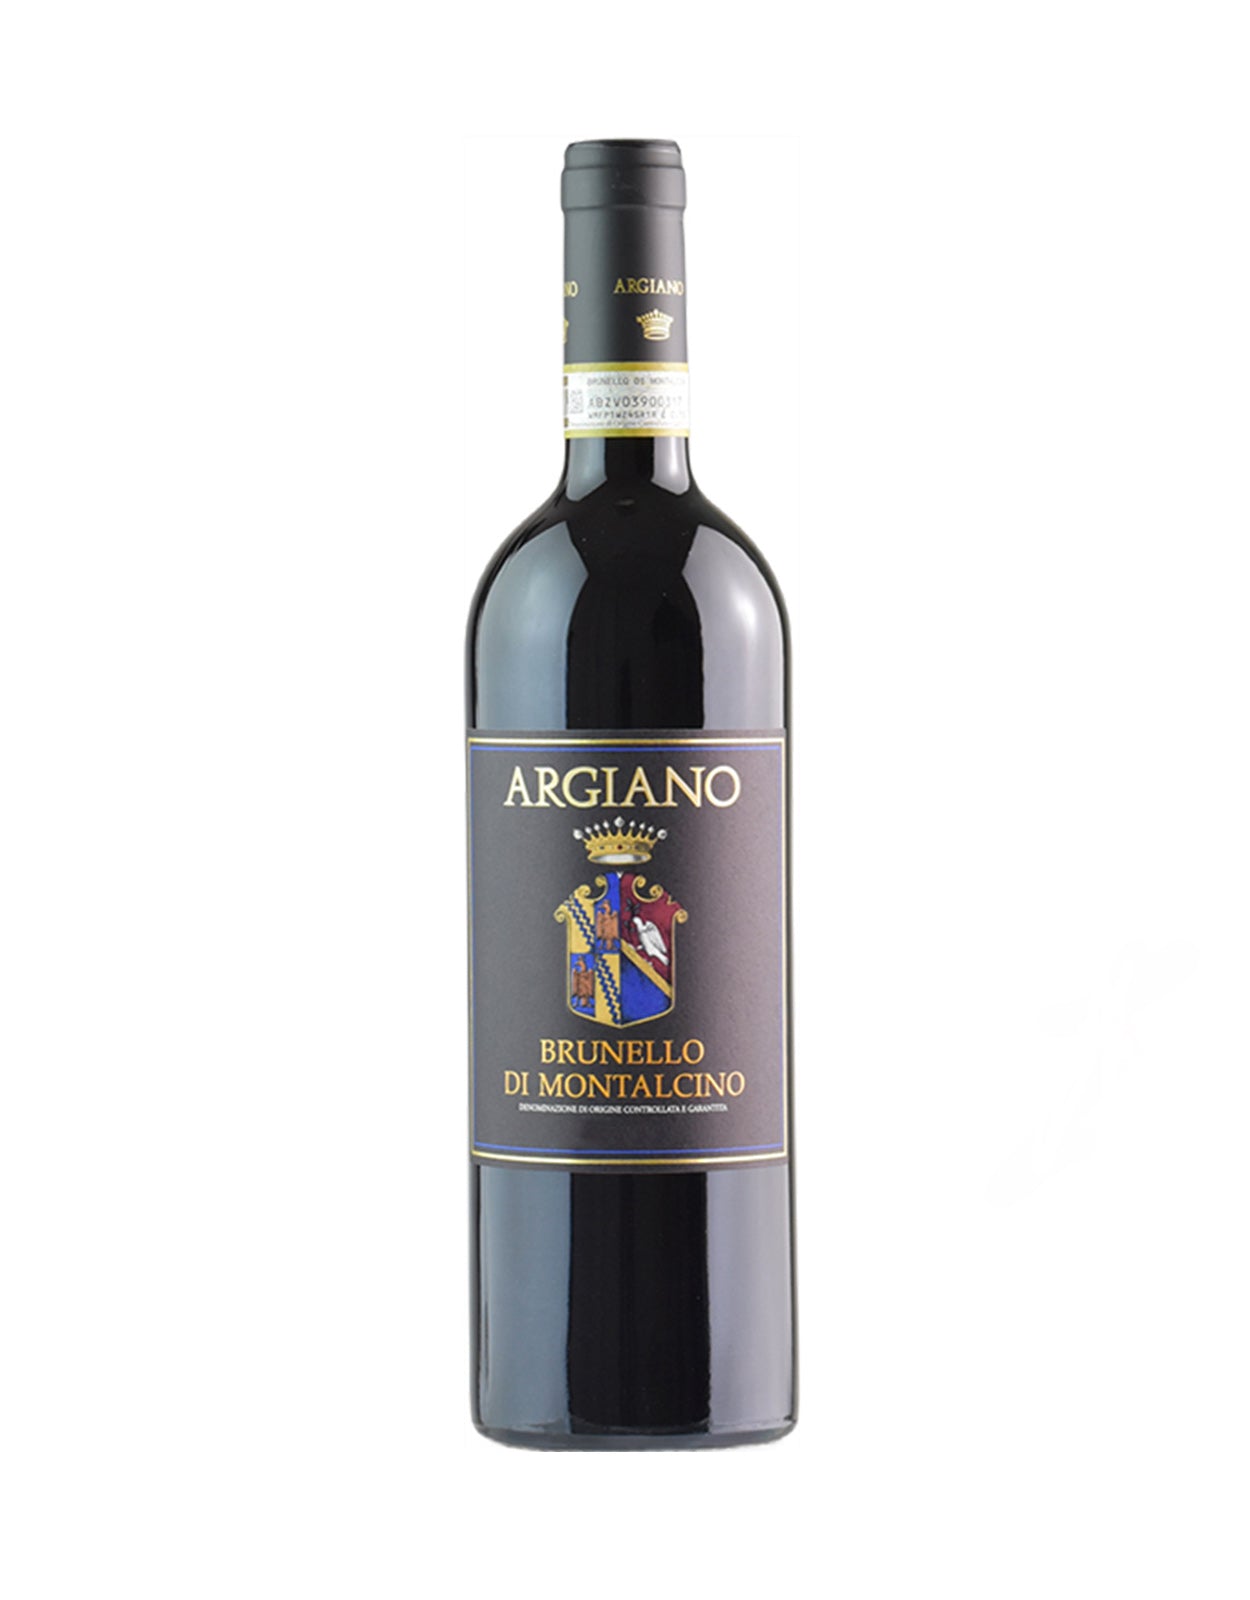 Argiano Brunello di Montalcino 2018 - 1.5 Litre Bottle